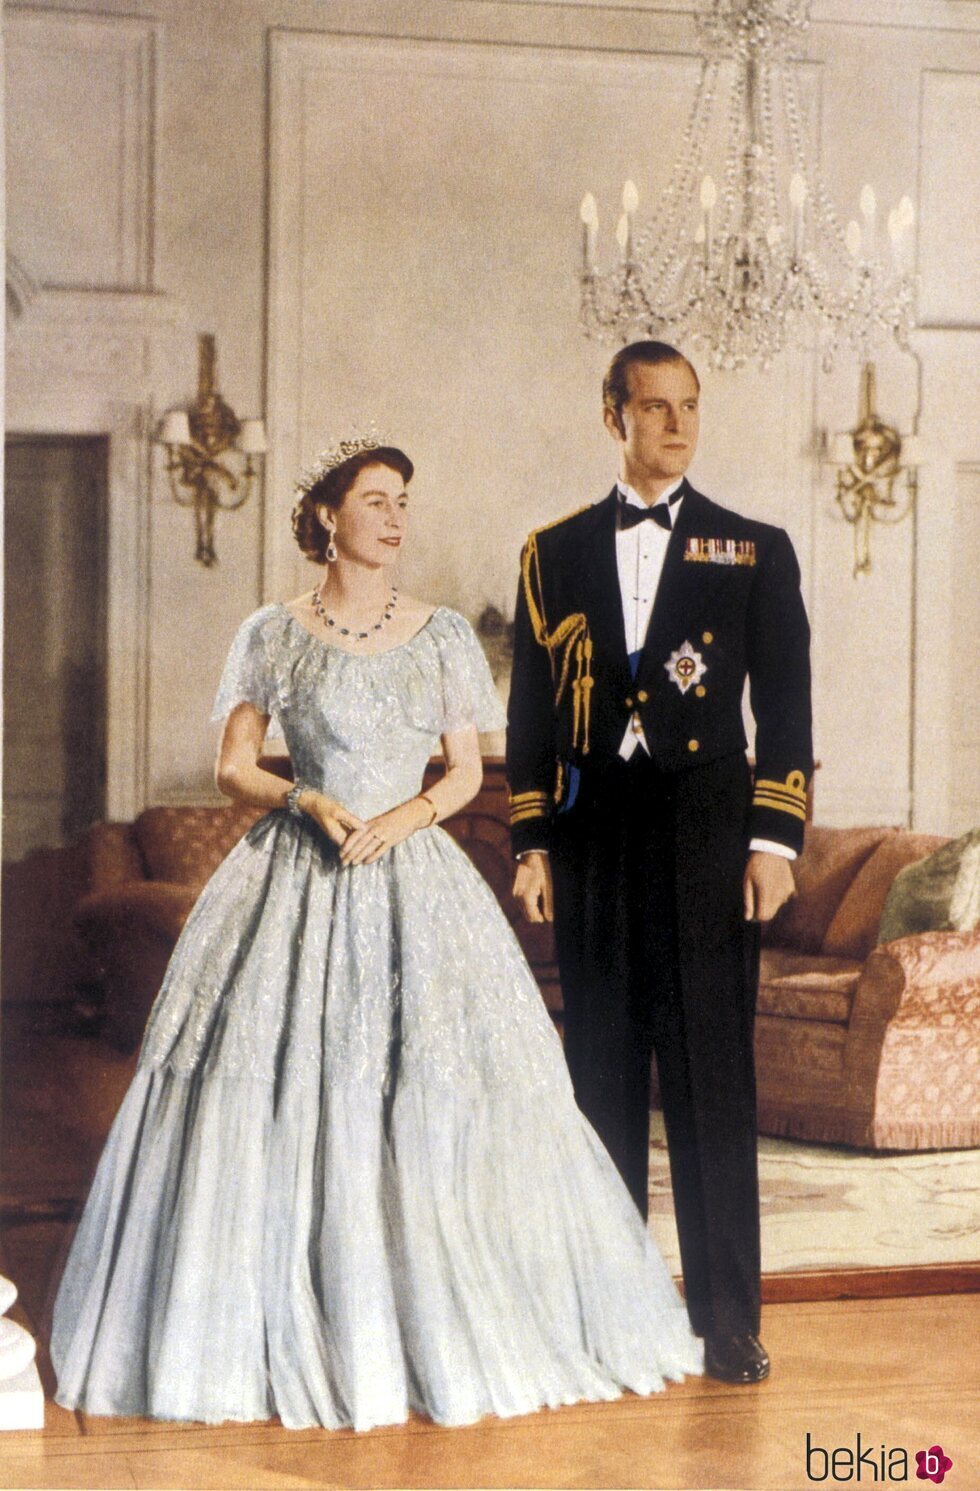 La Reina Isabel y el Duque de Edimburgo vestidos de gala en 1953